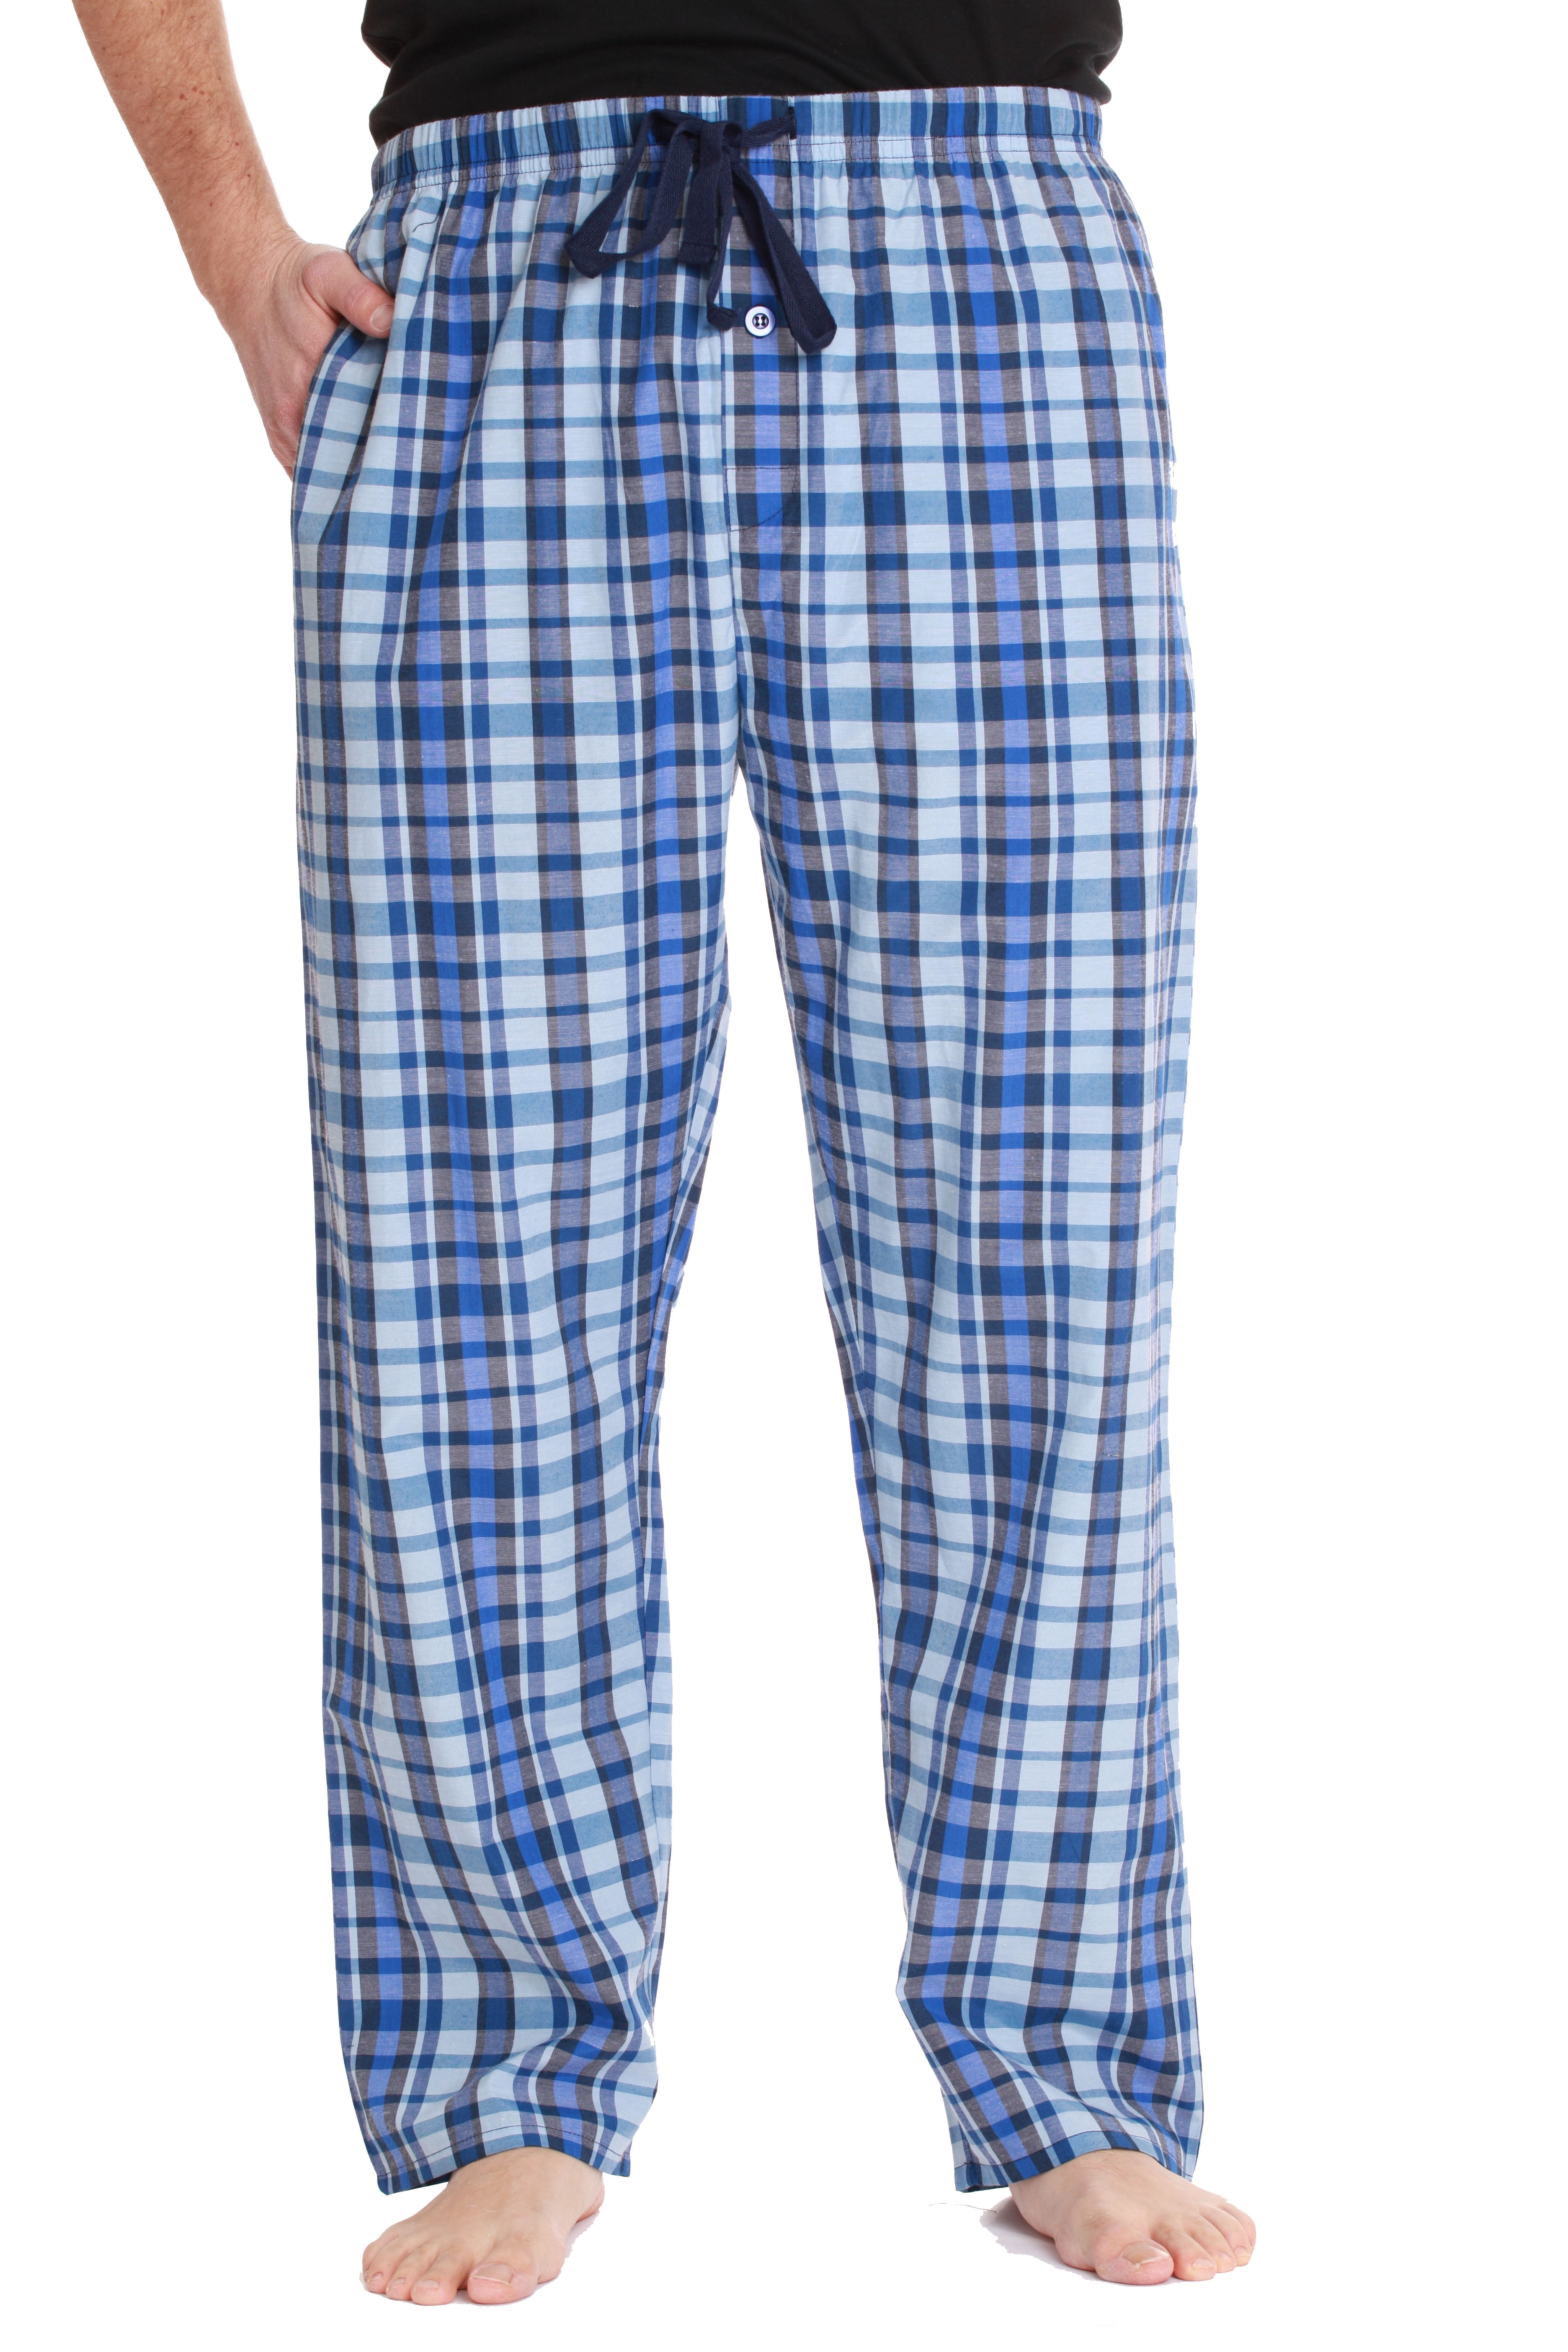 NORDSTROMPoplin Printed Men's Pajama PantsBlack PlaidLarge 